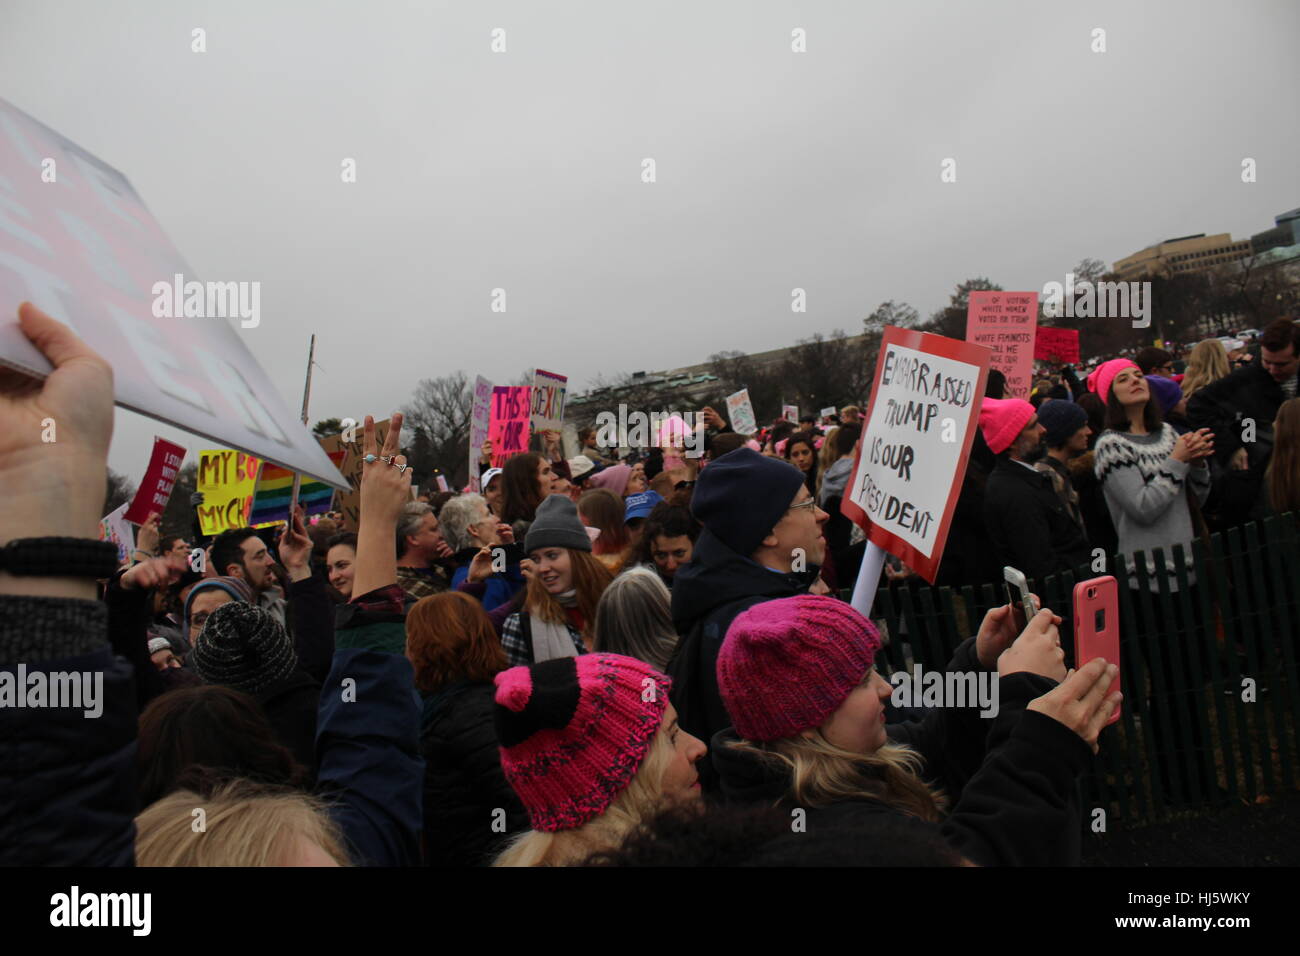 Distrikt von Columbia, USA. 21 Jan, 2017. Die Demonstranten versammeln sich auf dem Rasen des Weißen Hauses, die Bilder und Zeichen. Stockfoto